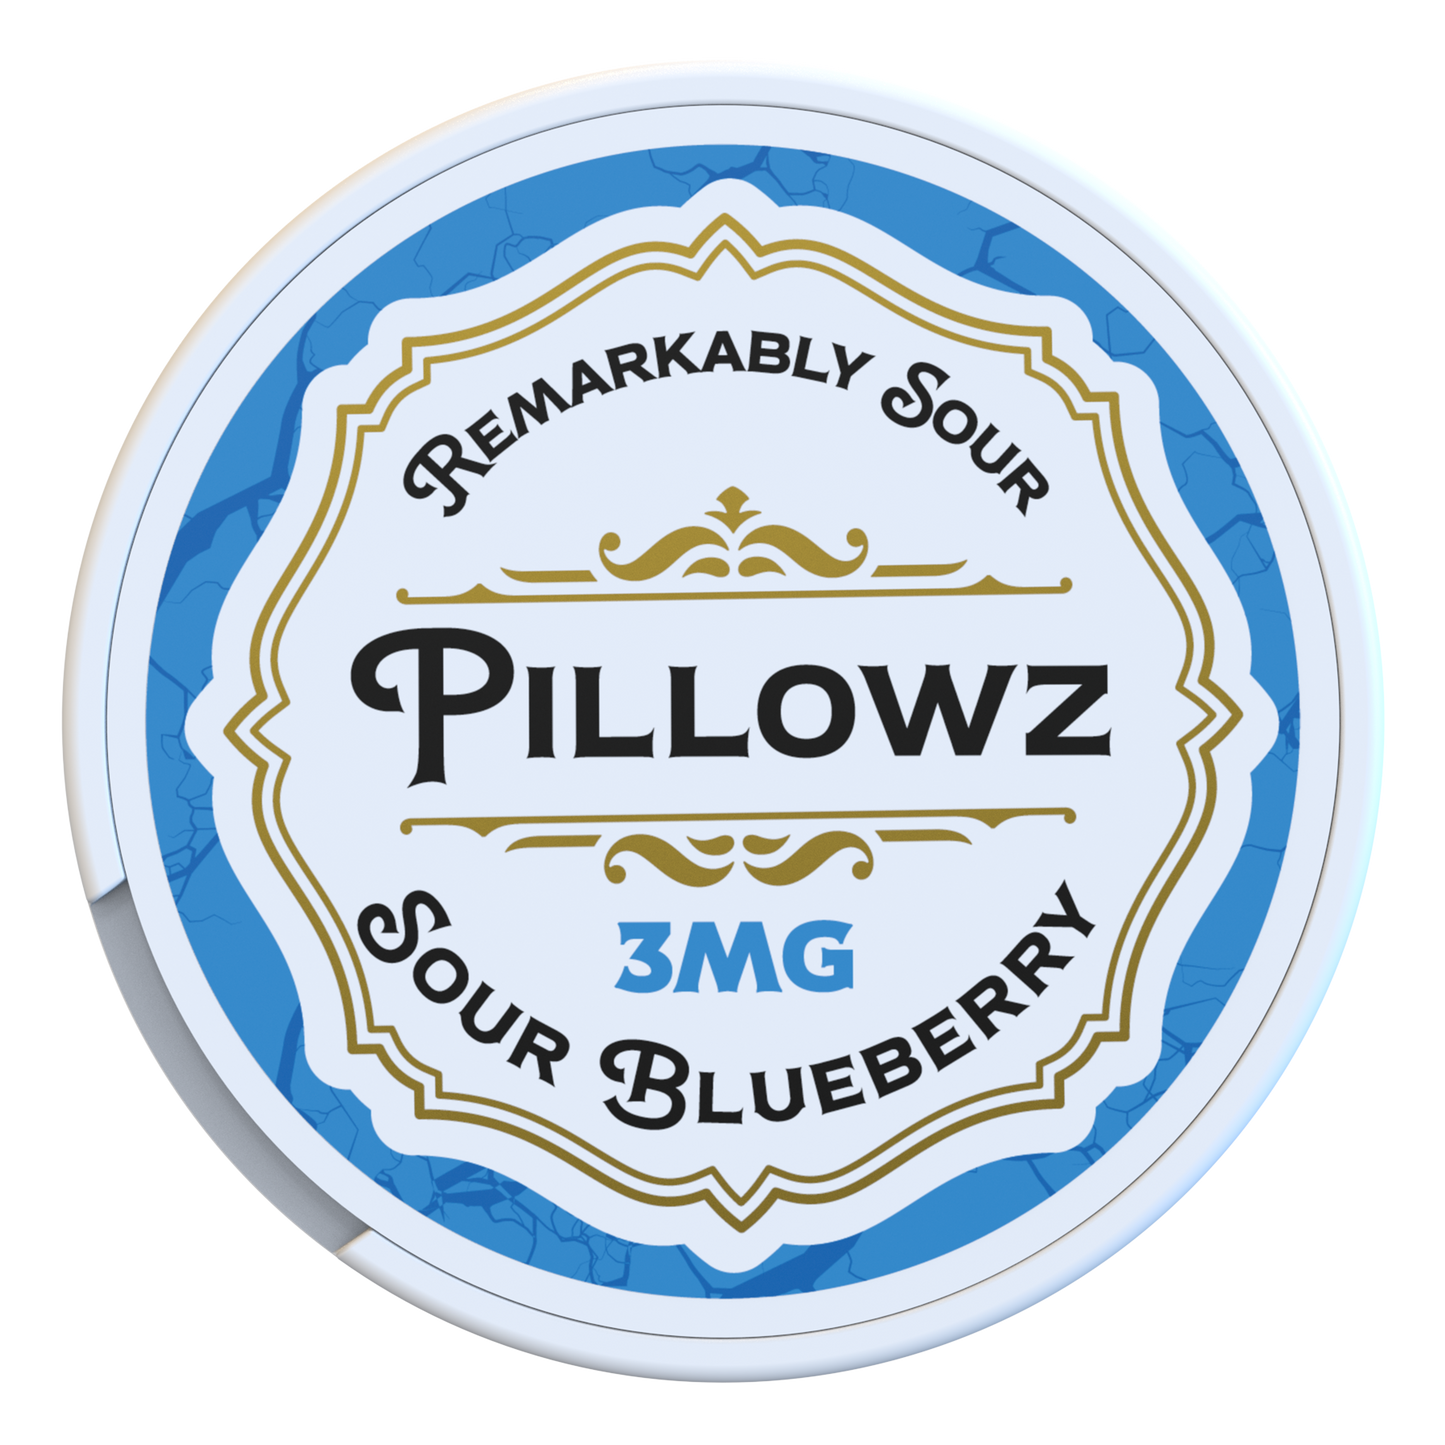 Pillowz Nicotine Pouches Sour Blueberry